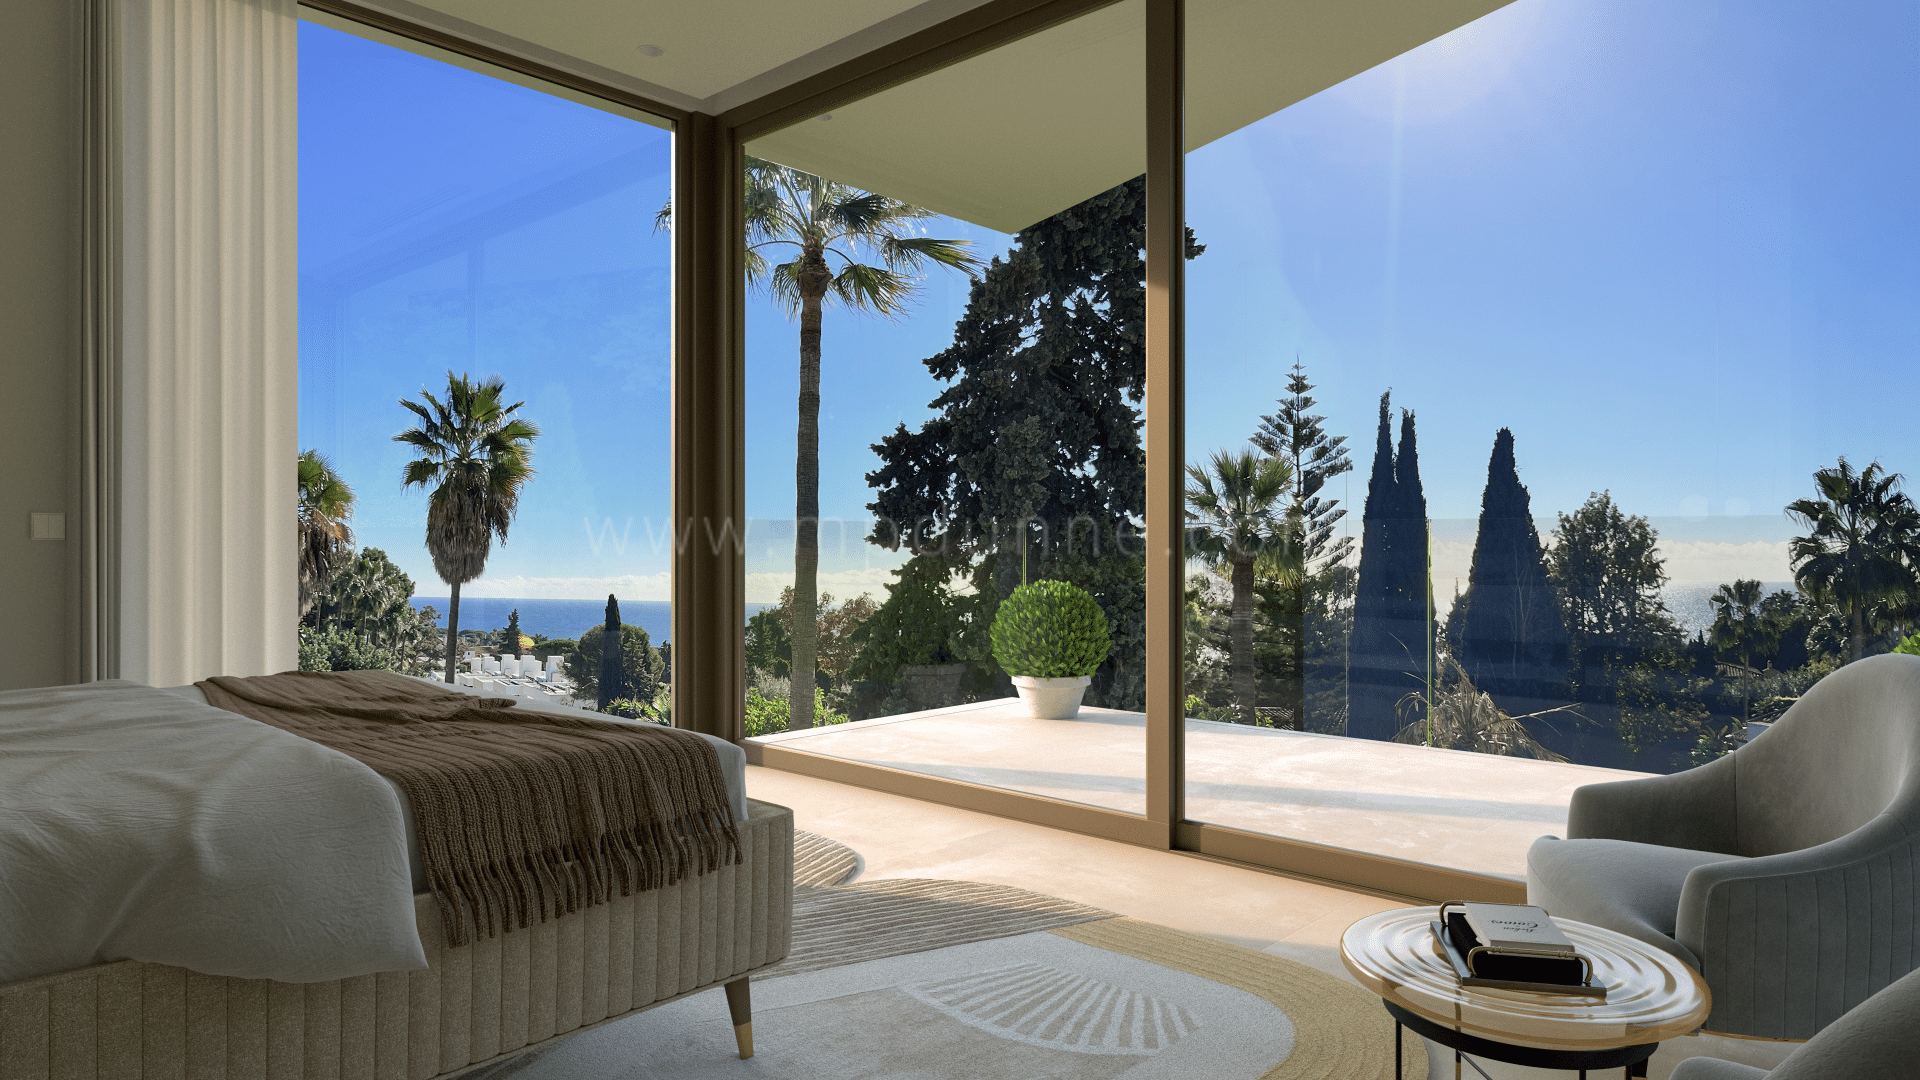 La Carolina Villa moderna con vistas panorámicas en Marbella Milla de Oro